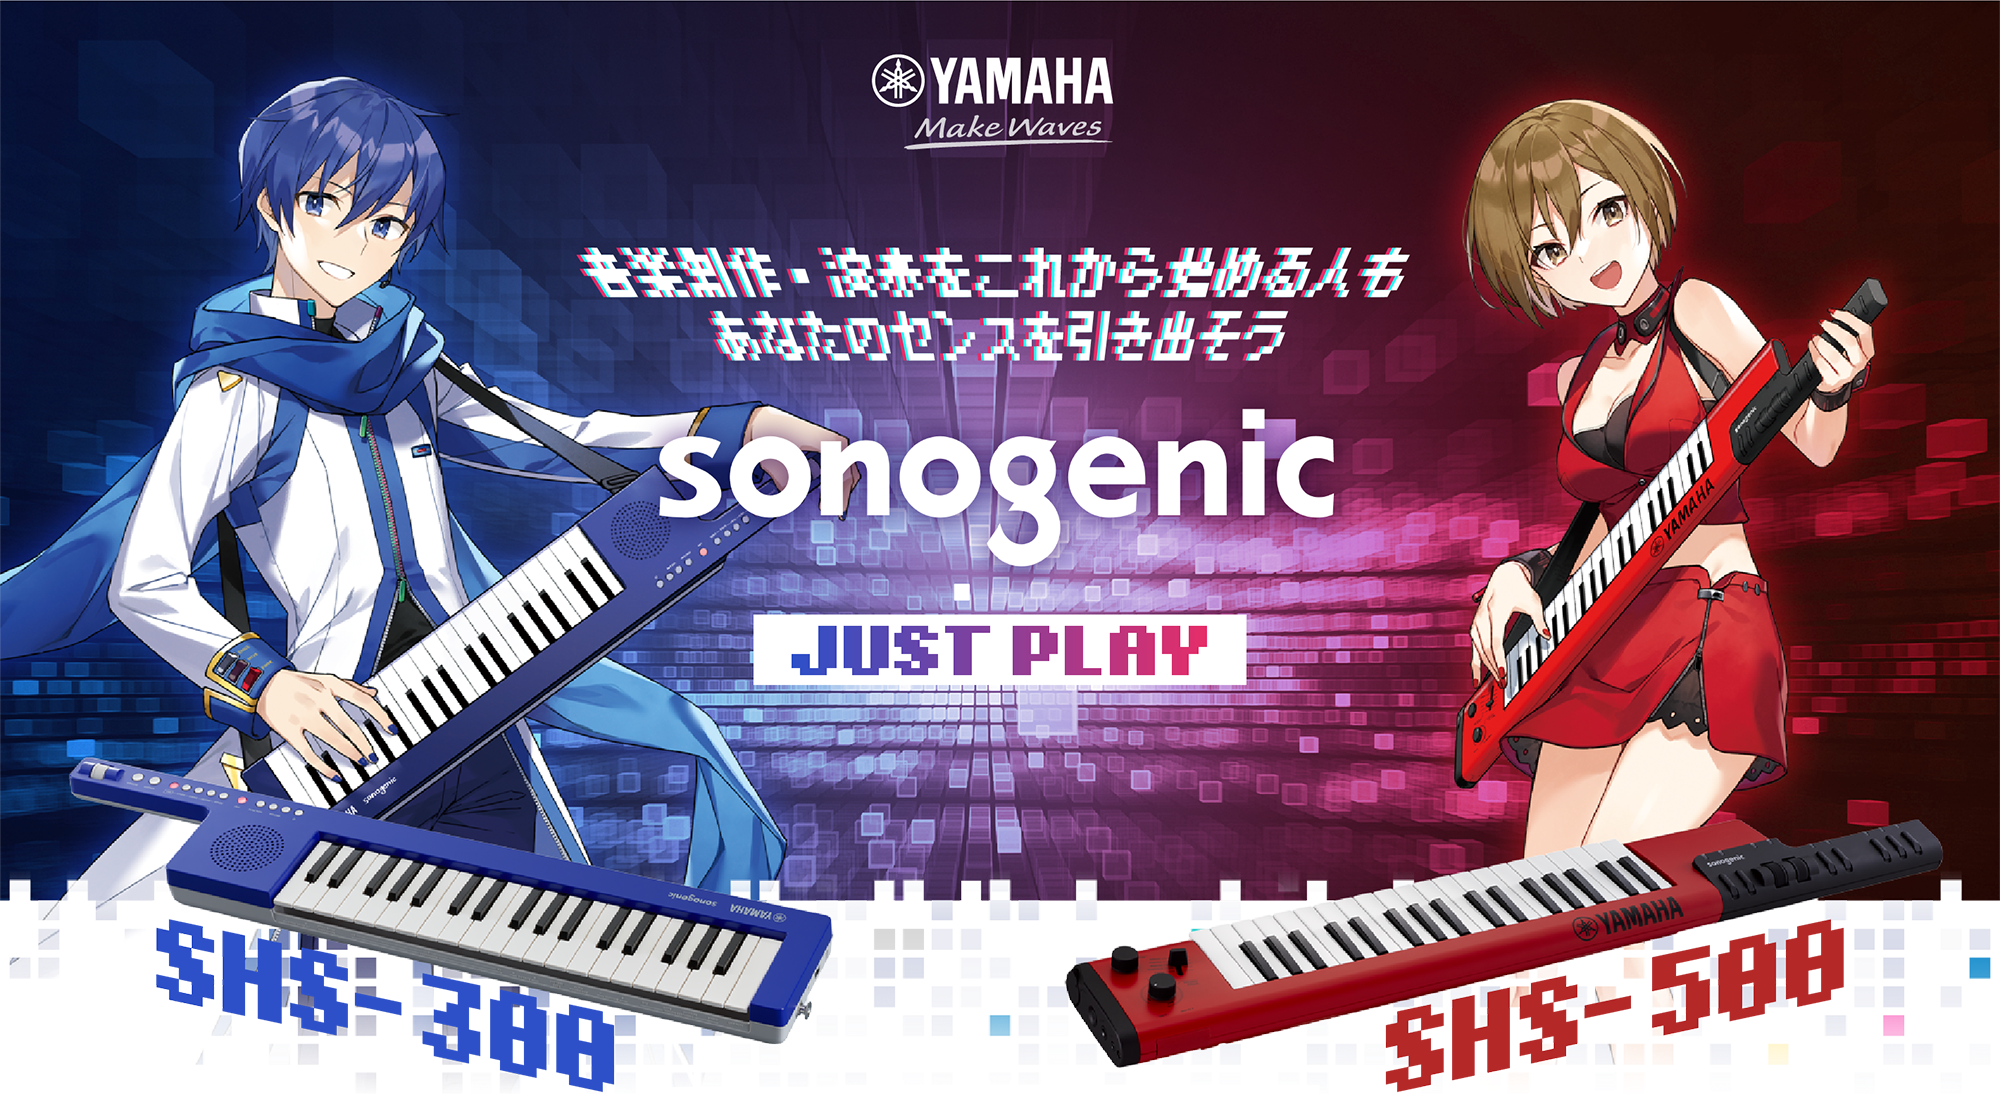 snogenic - JUST PLAY - 音楽制作・演奏をこれから始める人もあなたのセンスを引き出そう